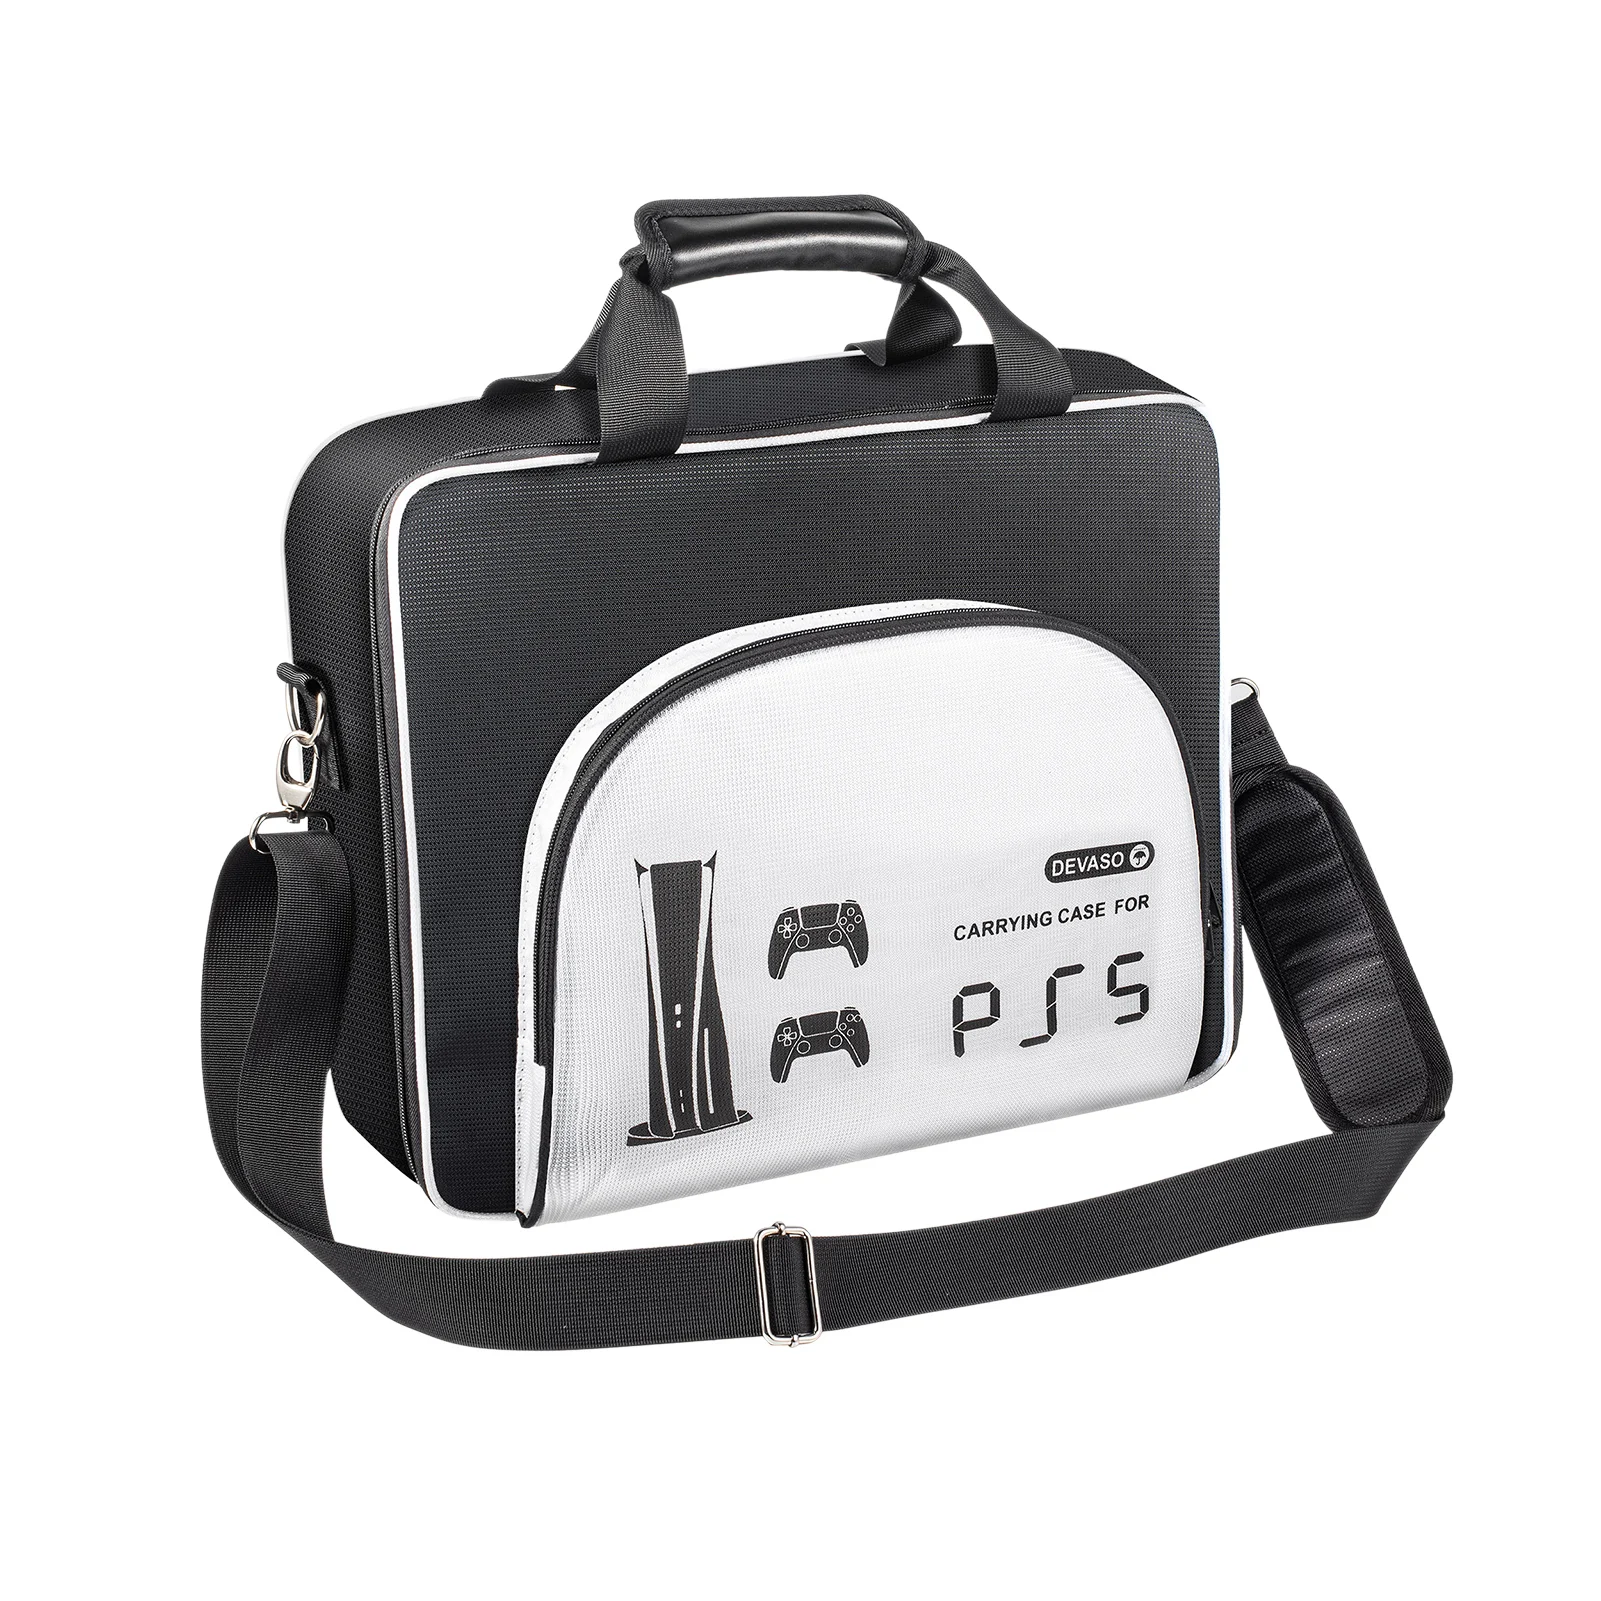 

Дорожная сумка для Sony PS 5 Playstation5, водонепроницаемый большой защитный чехол для контроллера консоли, аксессуары для кабеля